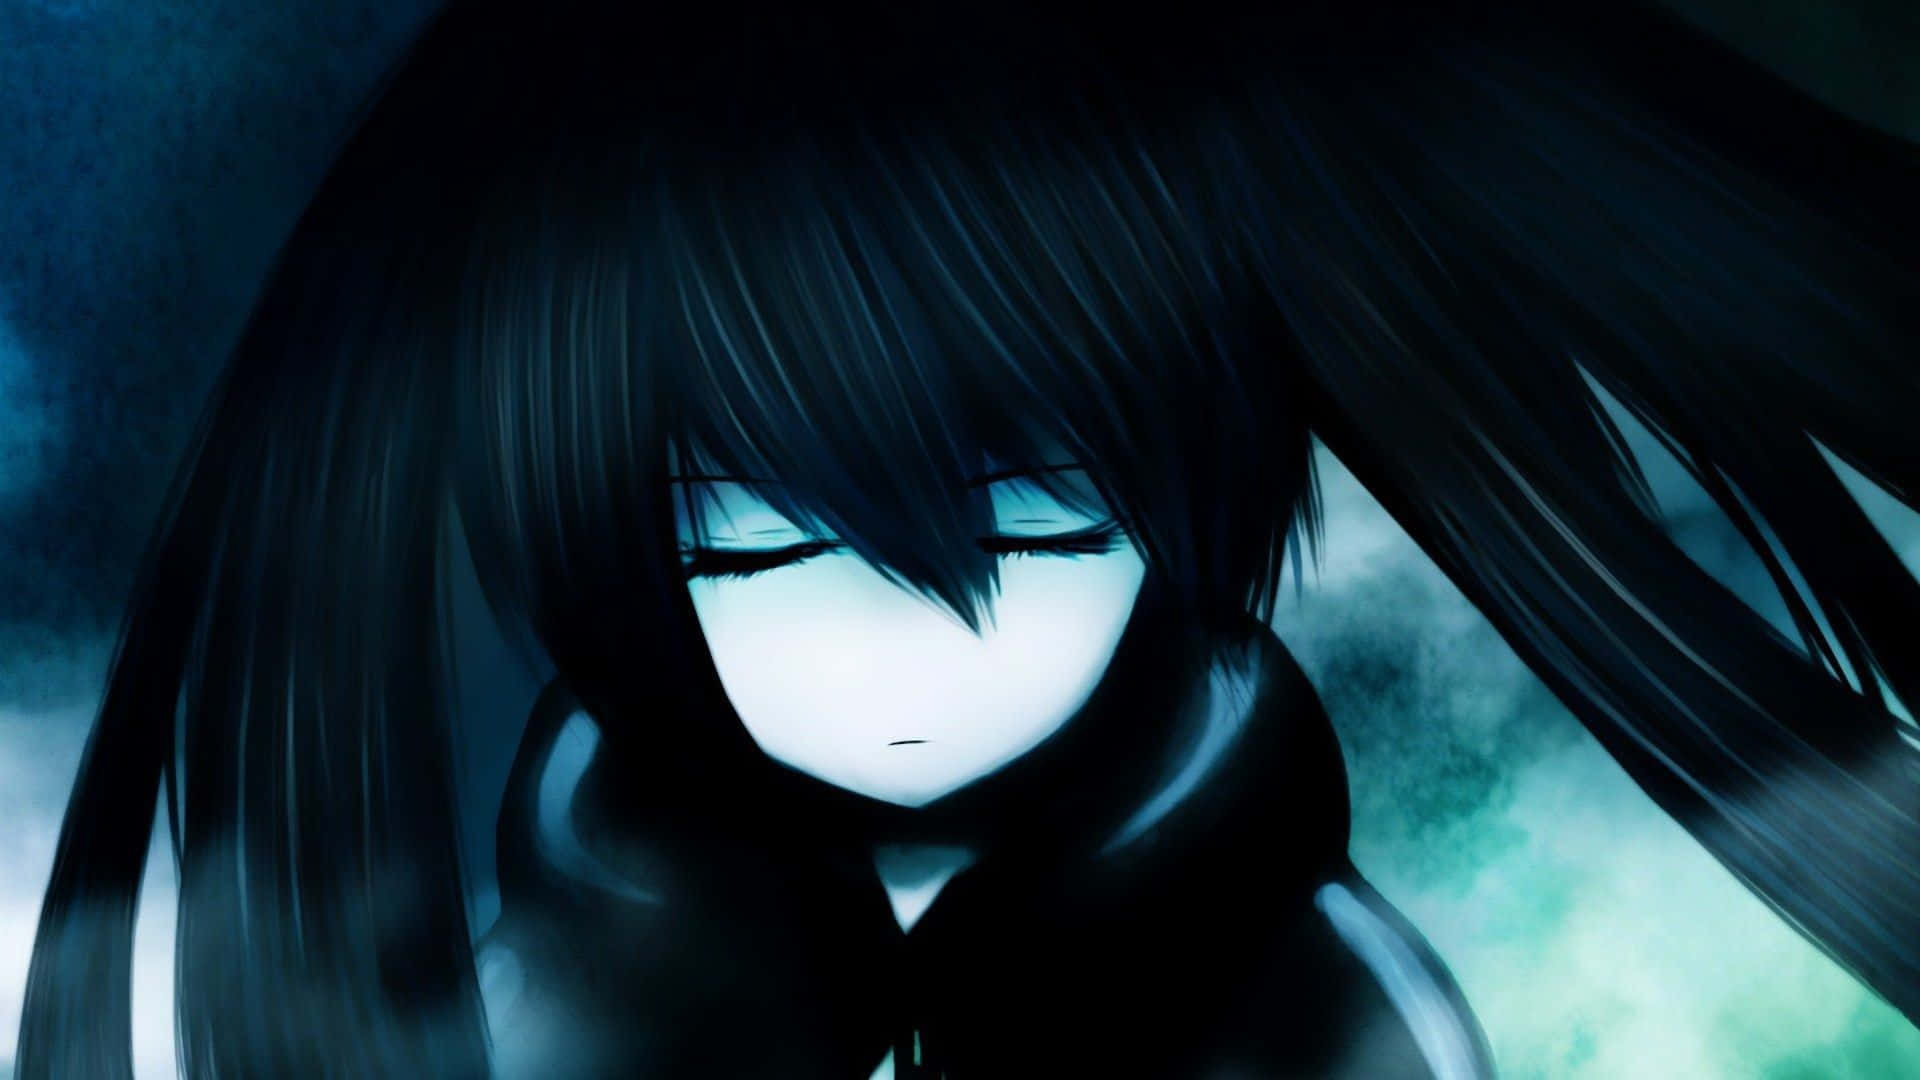 Unaescena De Anime Triste Y Oscura. Fondo de pantalla